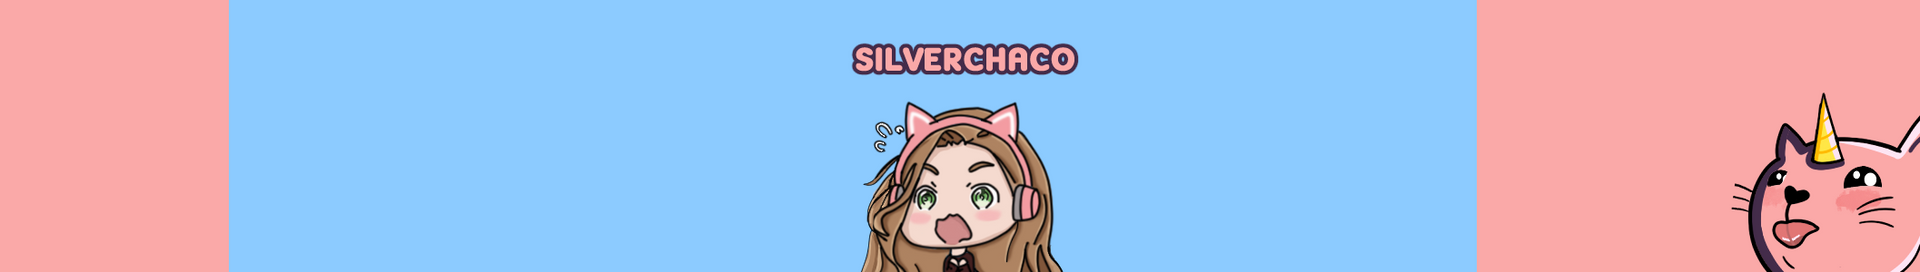 Silverchaco